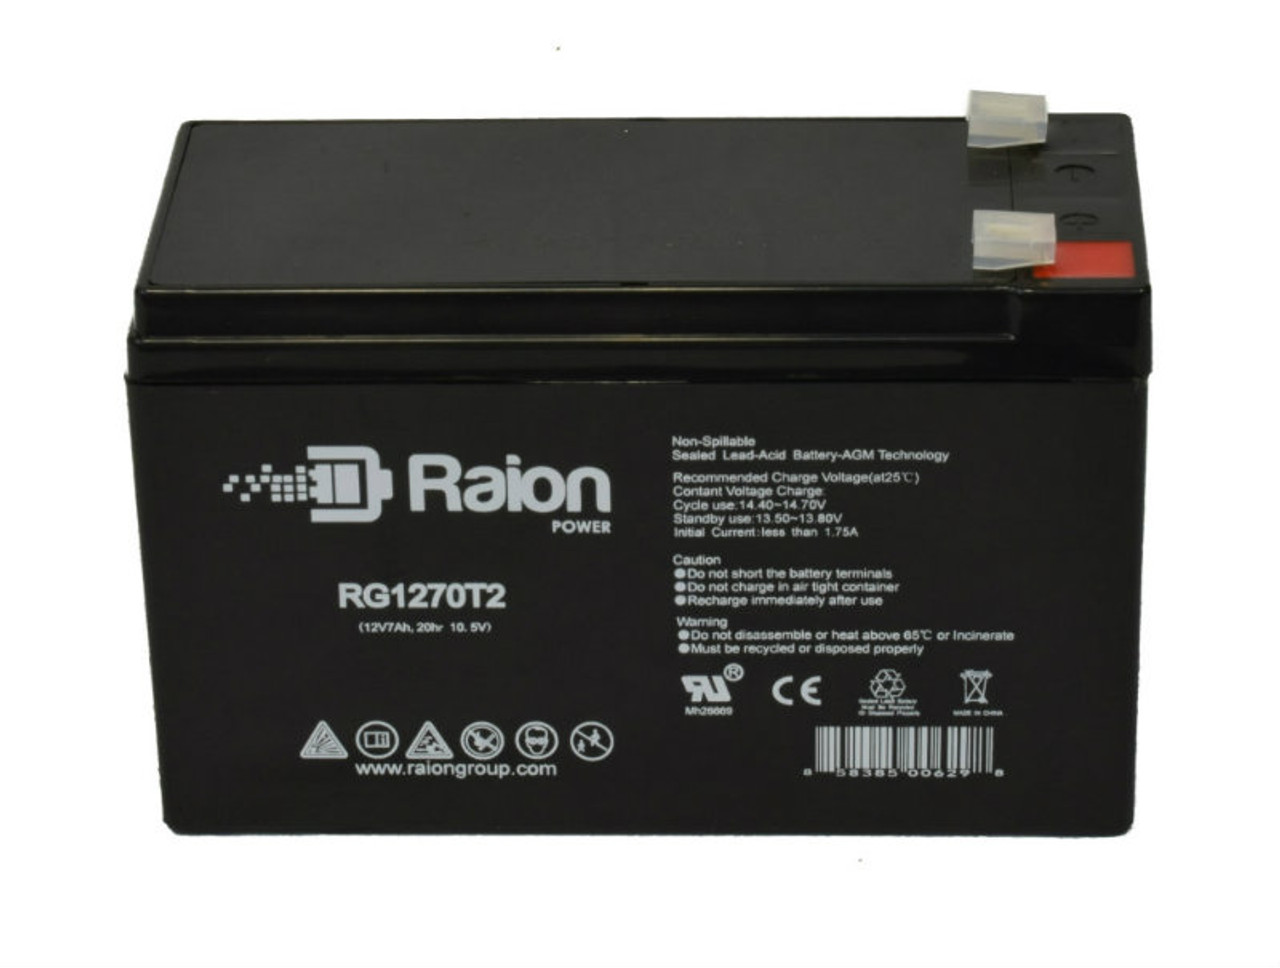 Raion Power RG1270T1 12V 7Ah Lead Acid Battery for AmeriGlide Rave Stairlift